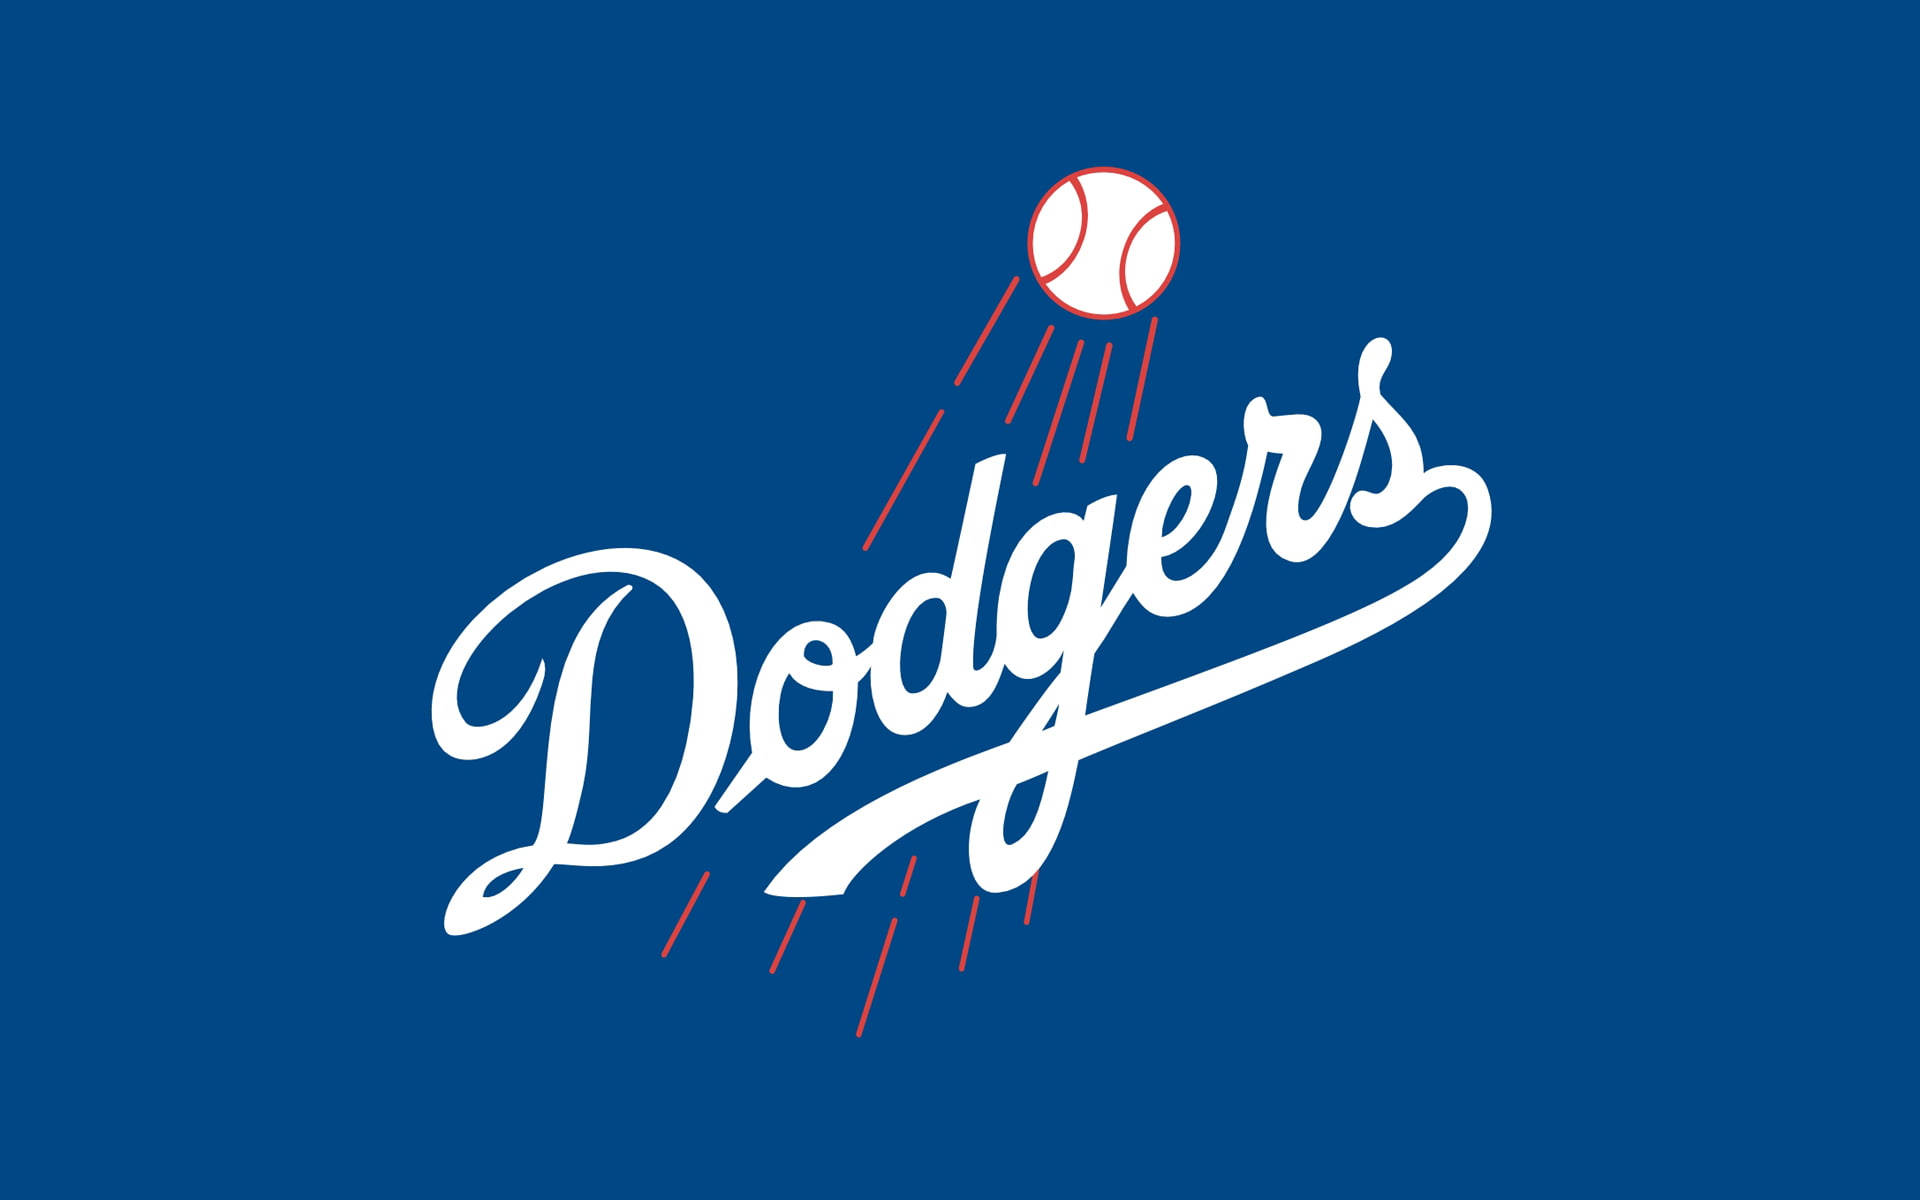 Coloreslisos De Los Angeles Dodgers. Fondo de pantalla